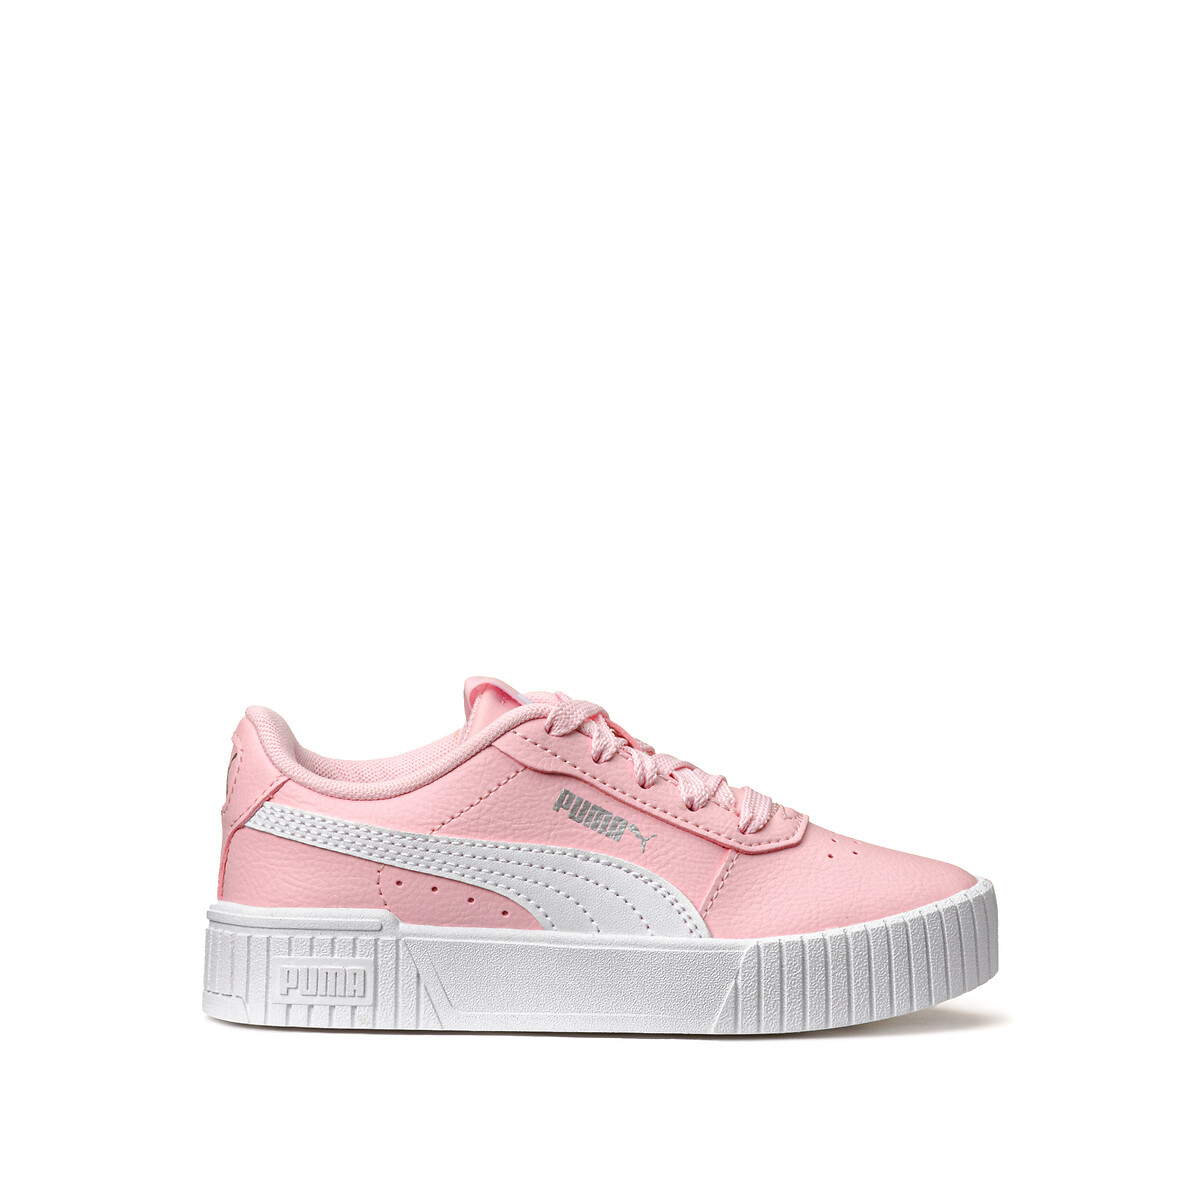 Zapatillas deportivas de piel carina 2.0 ps rosa Puma | La